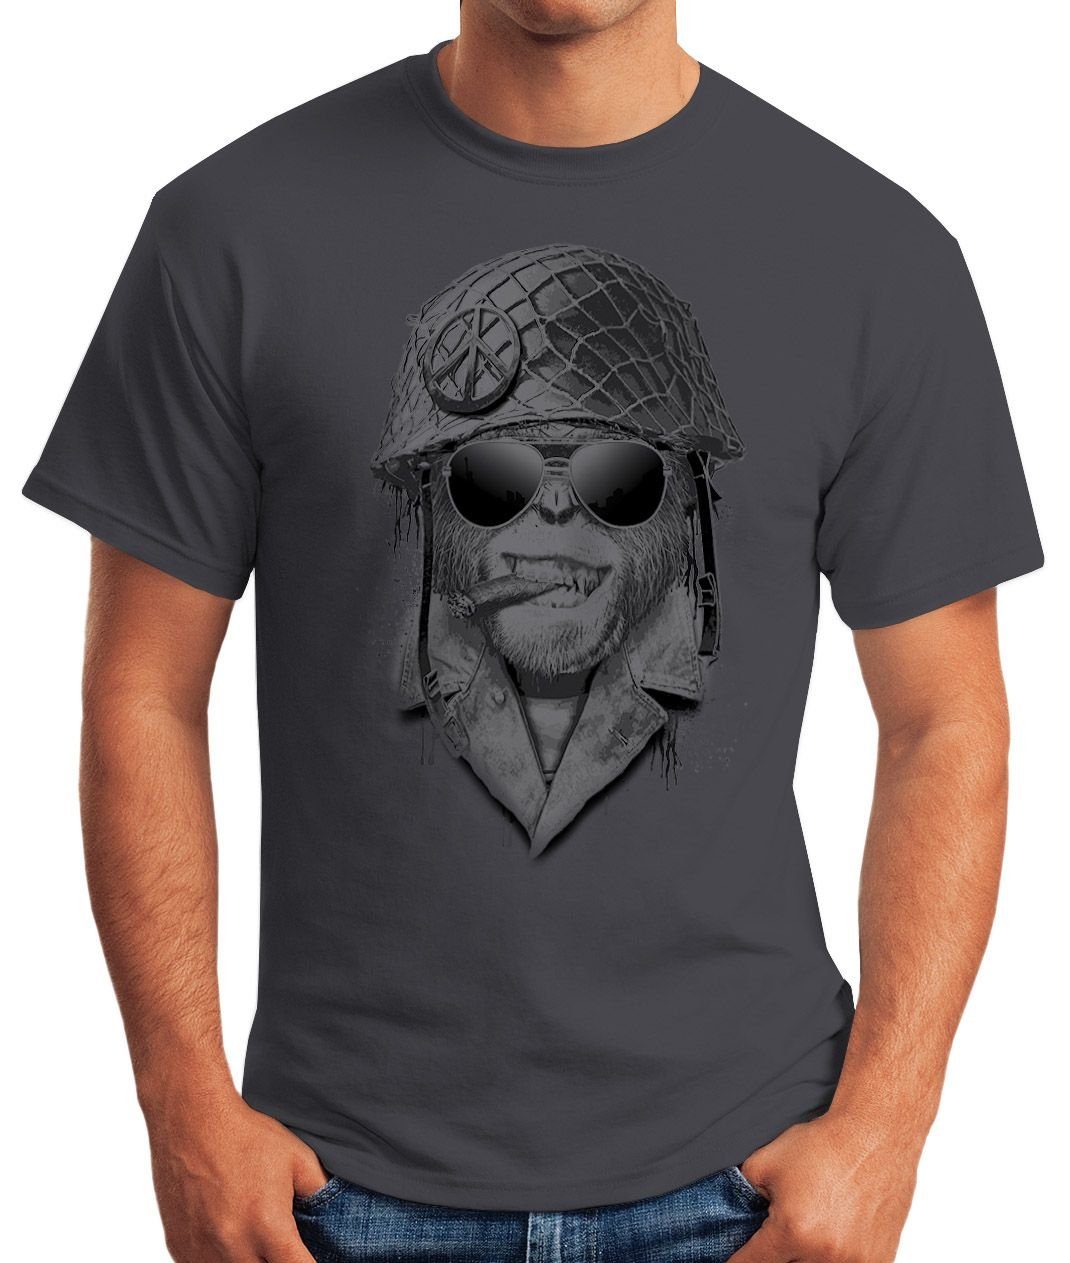 MoonWorks Print-Shirt Herren grau mit Helmet Print Gorilla Fun-Shirt T-Shirt Moonworks®